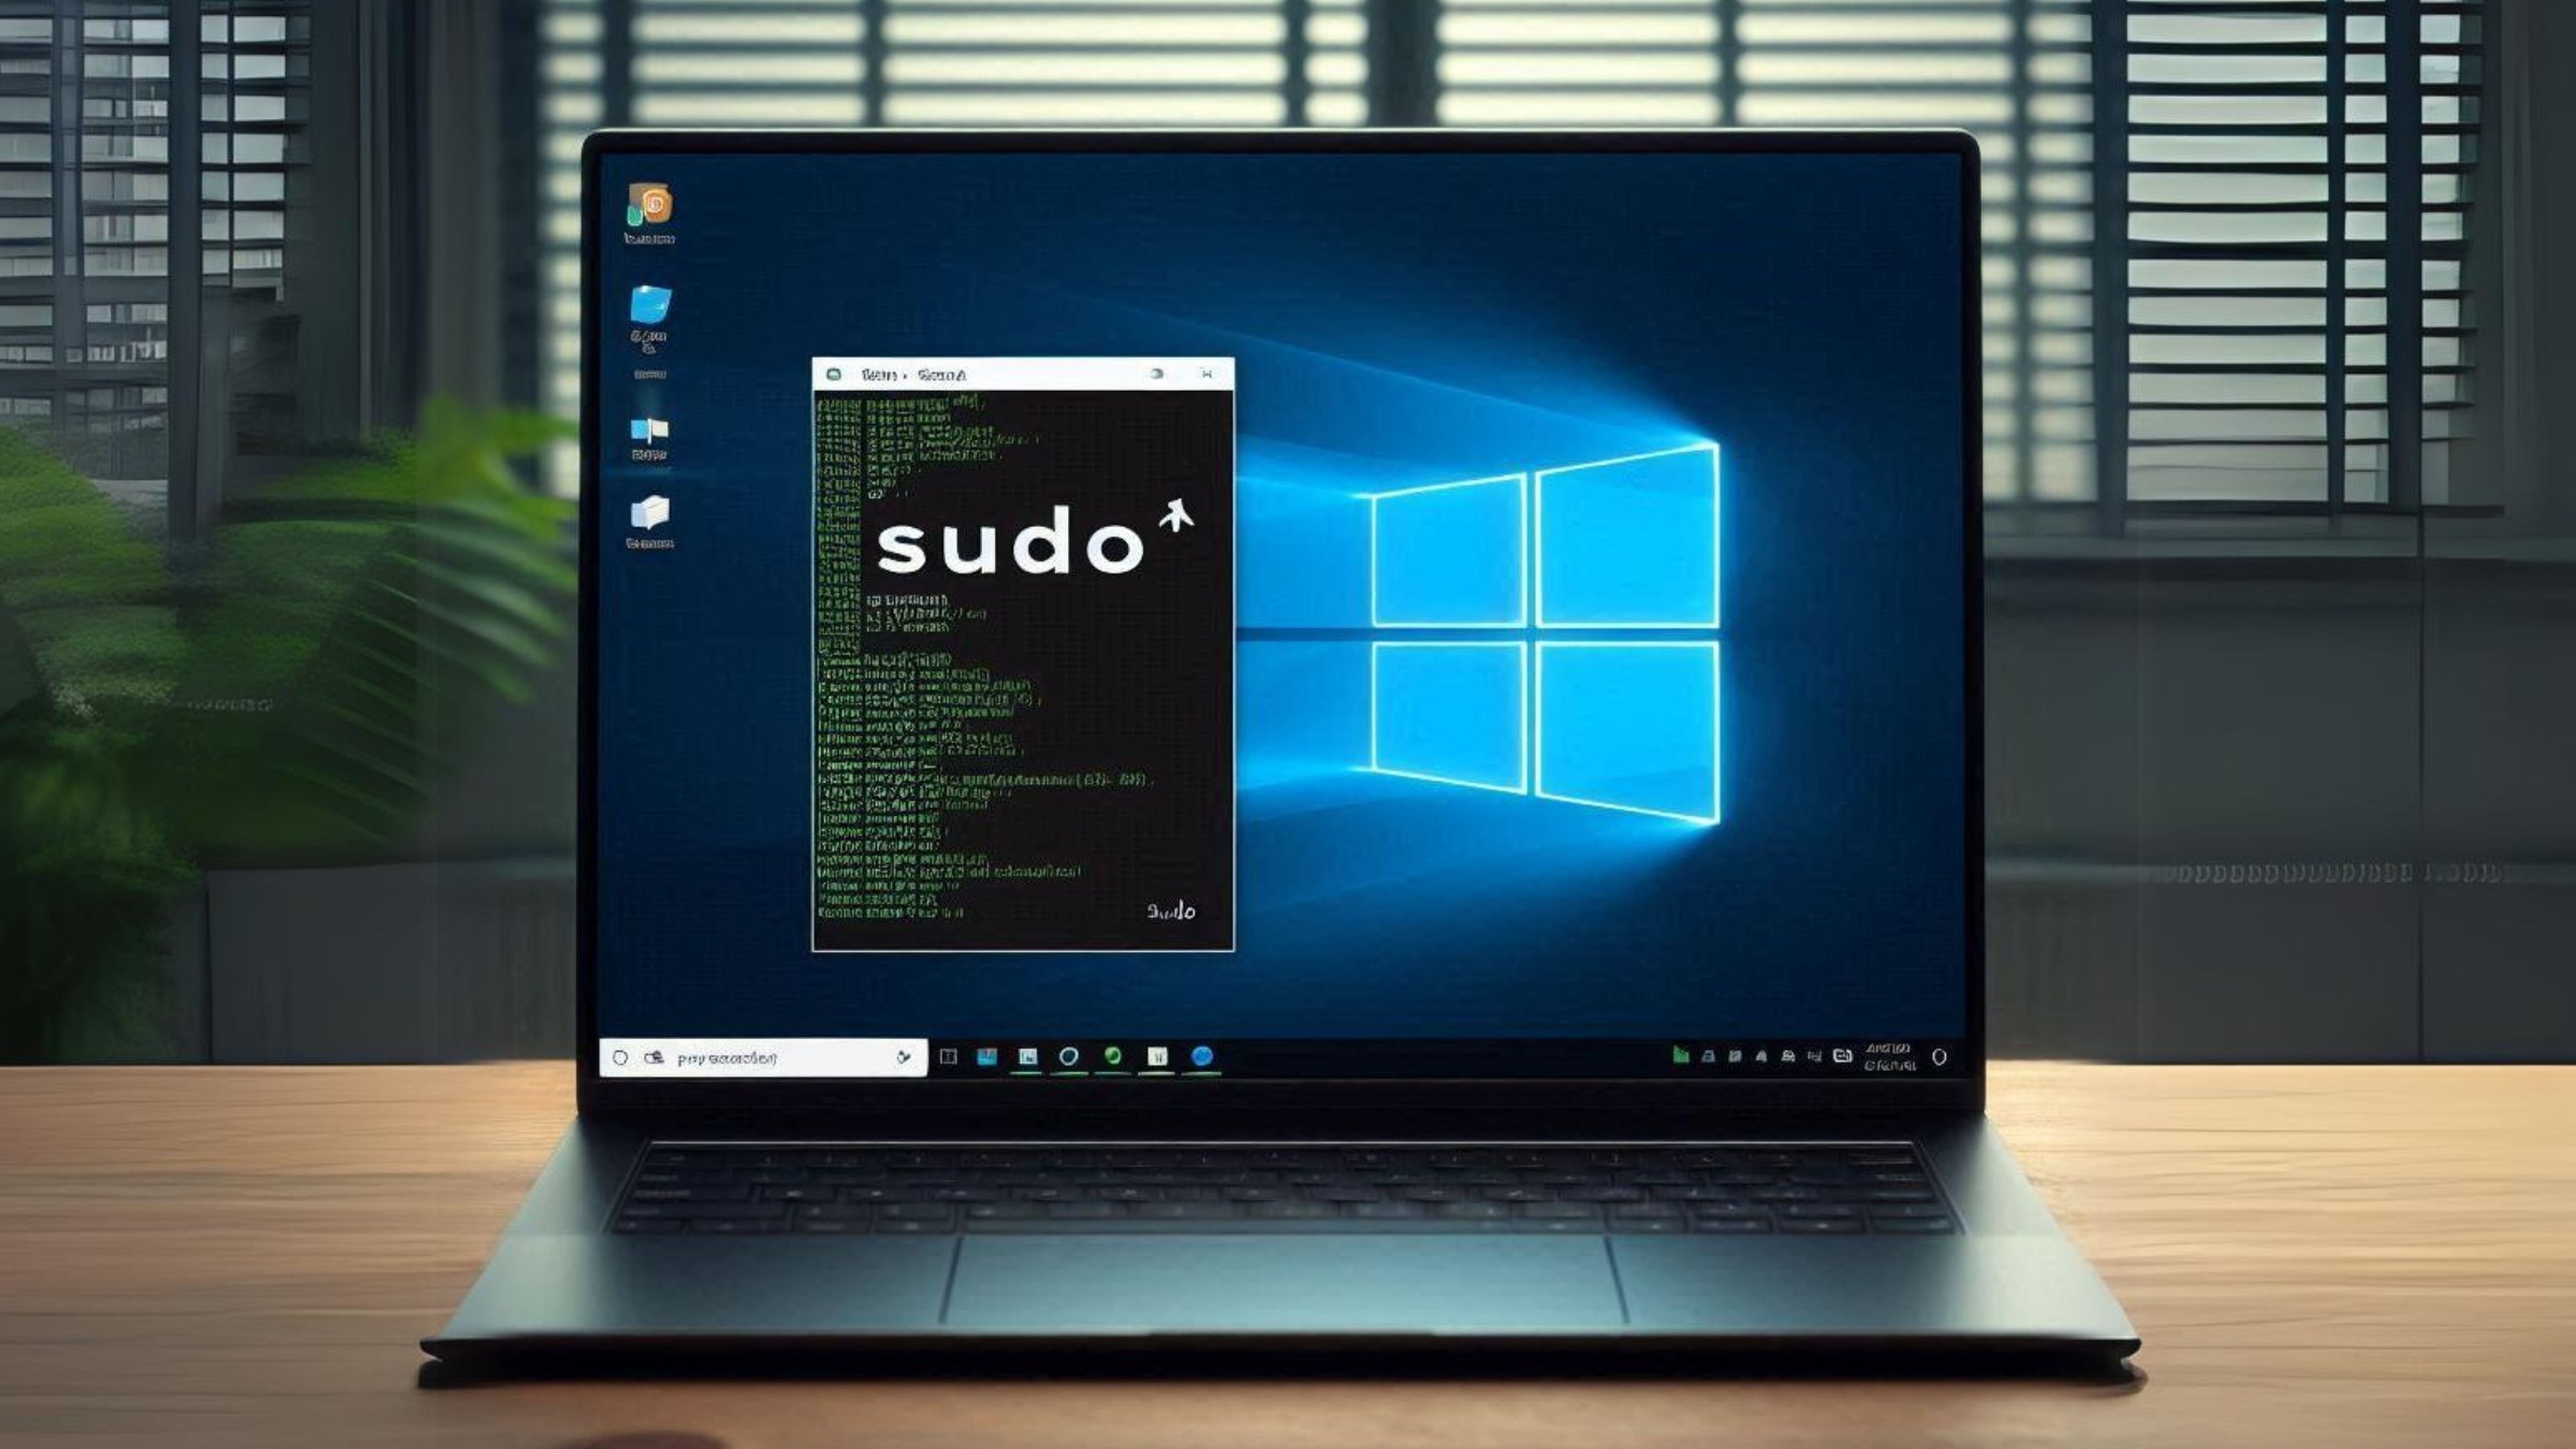 Comando Sudo en Windows, para qué sirve y lo que puedes hacer: ¿es tan poderoso como en Linux?